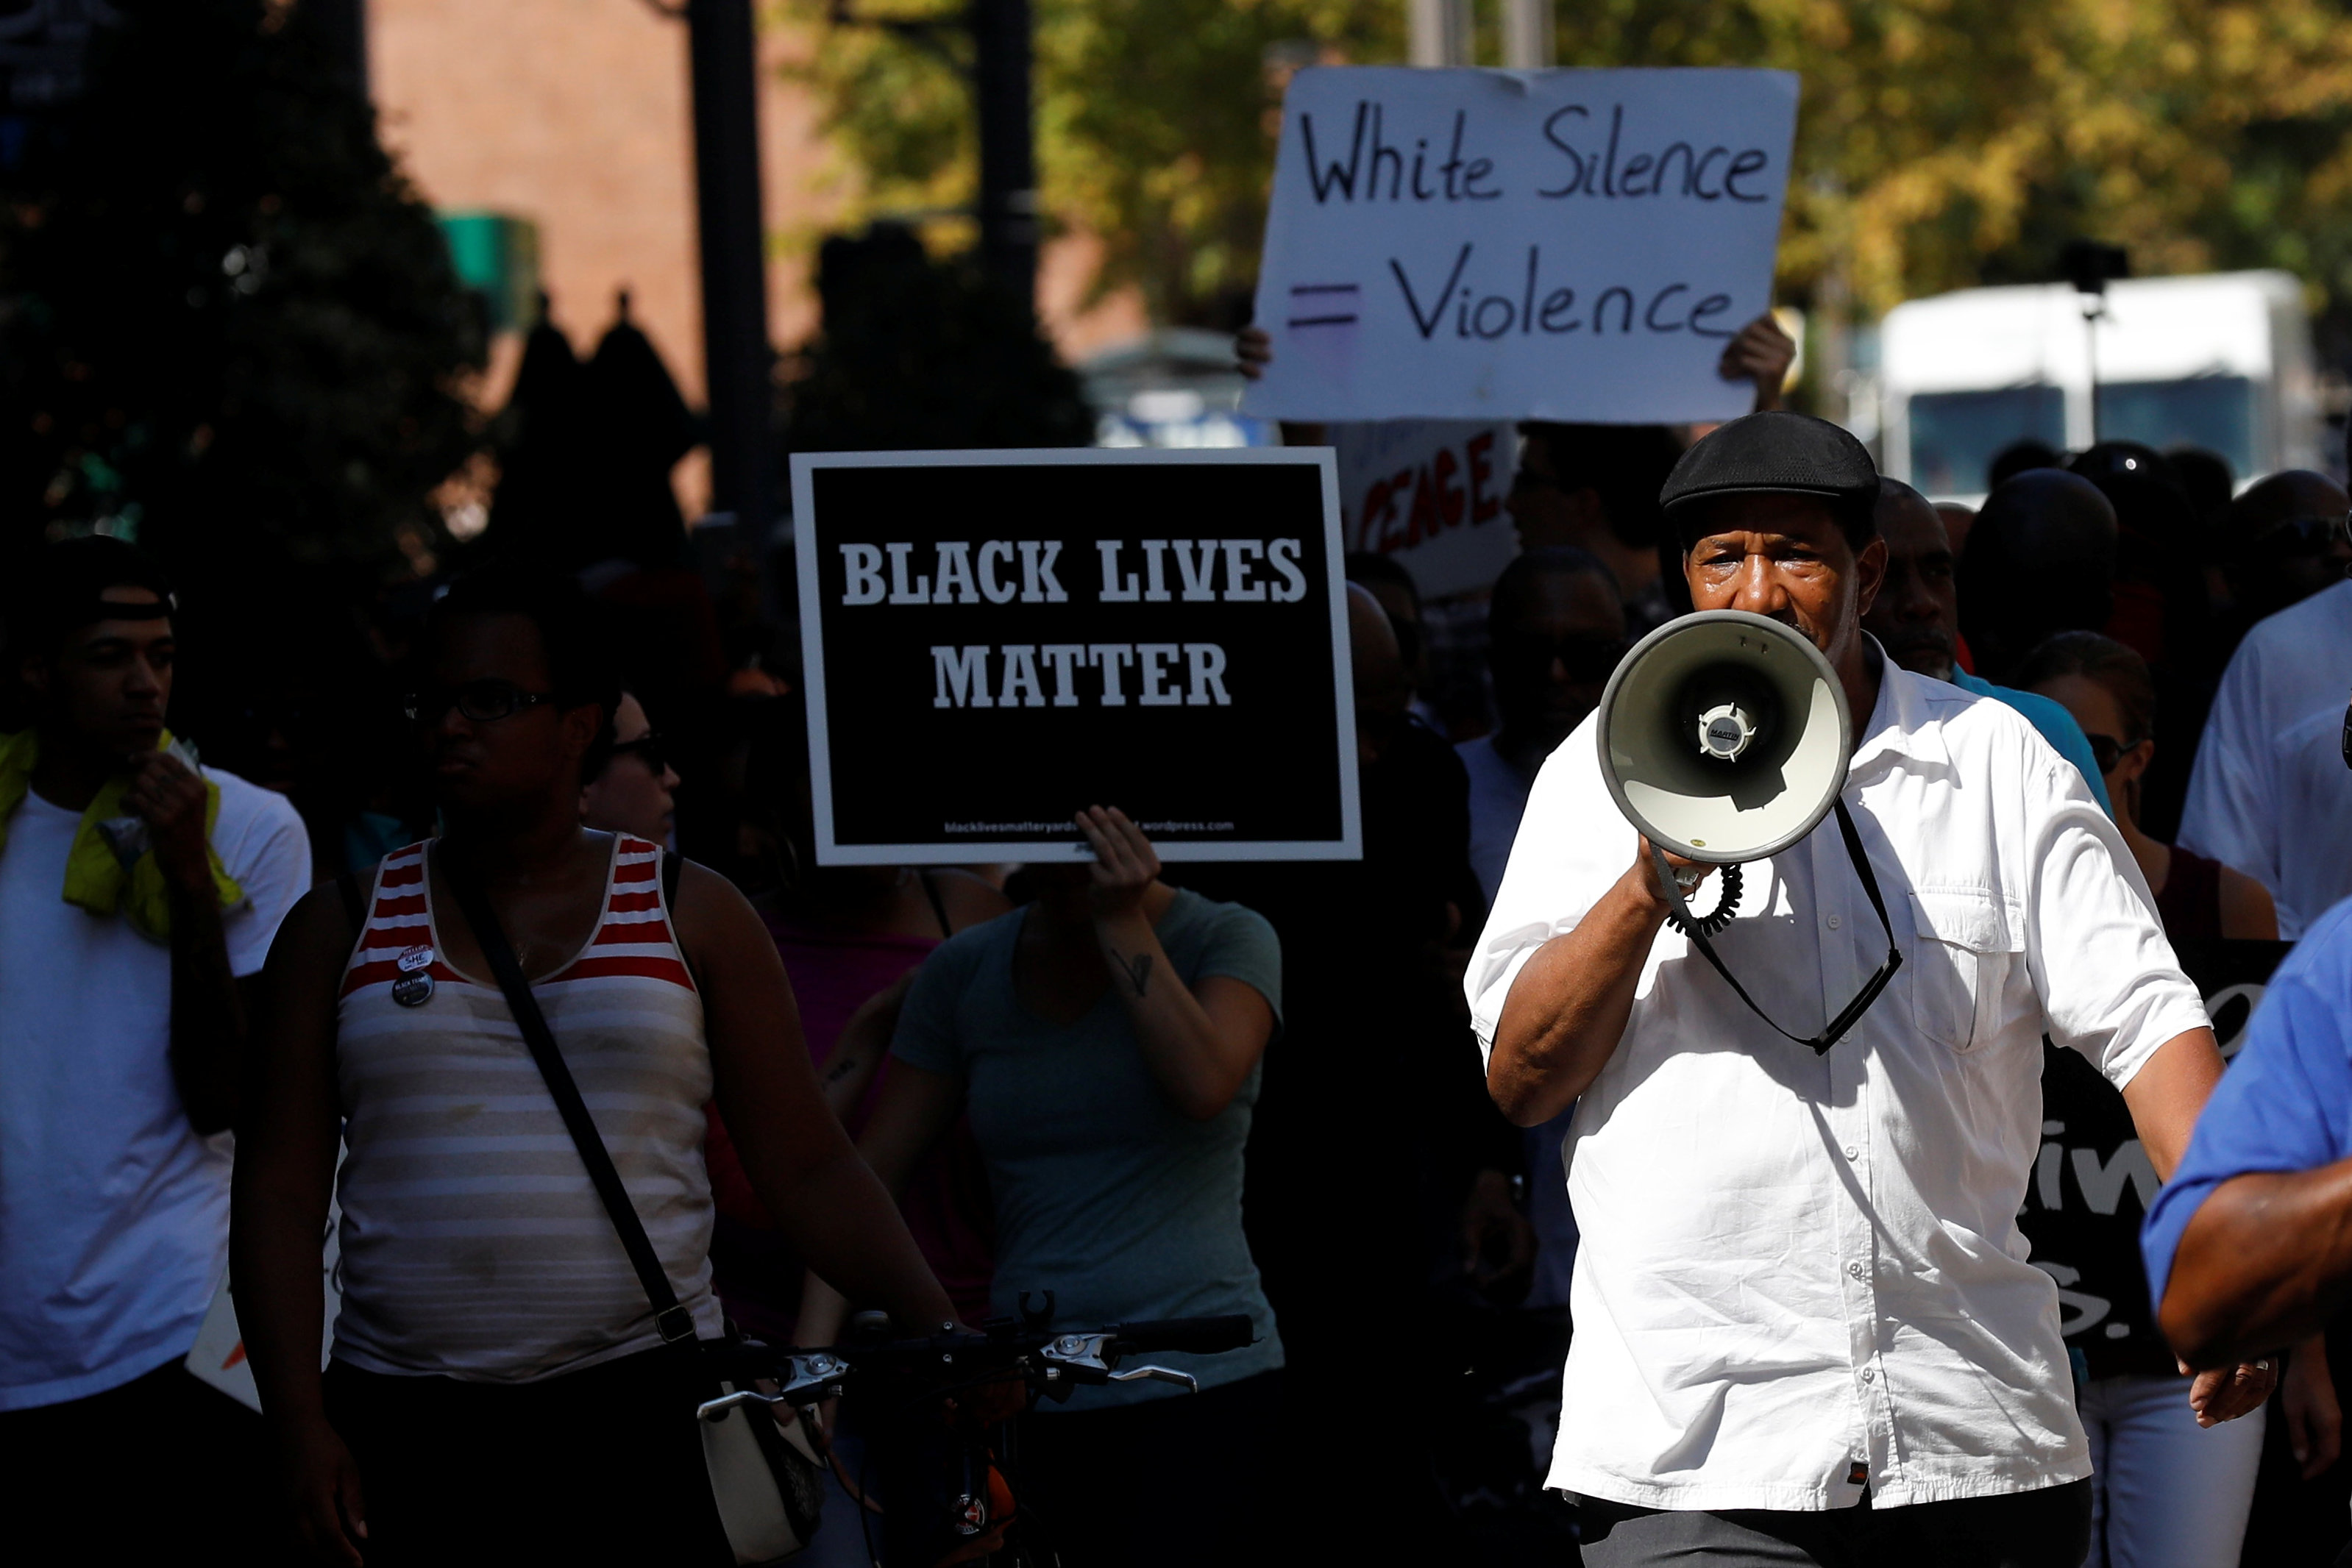 ΗΠΑ: Ένταση στο Σεντ Λούις μετά την αθώωση αστυνομικού που σκότωσε Αφροαμερικανό